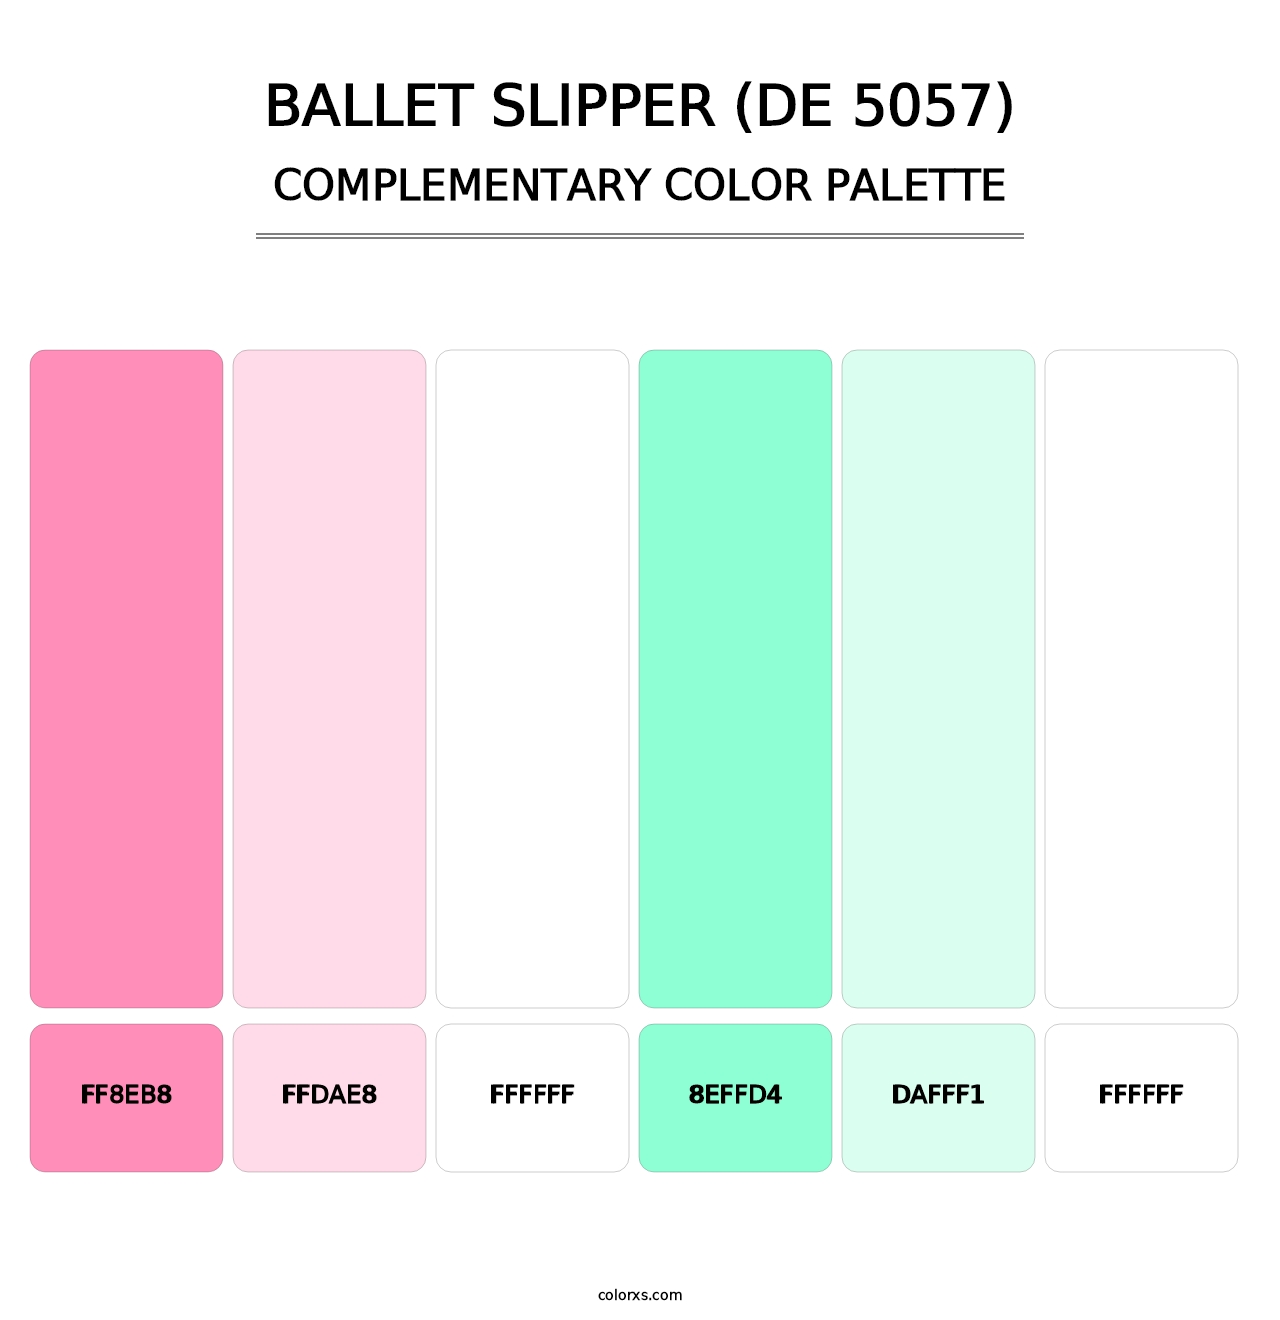 Ballet Slipper (DE 5057) - Complementary Color Palette